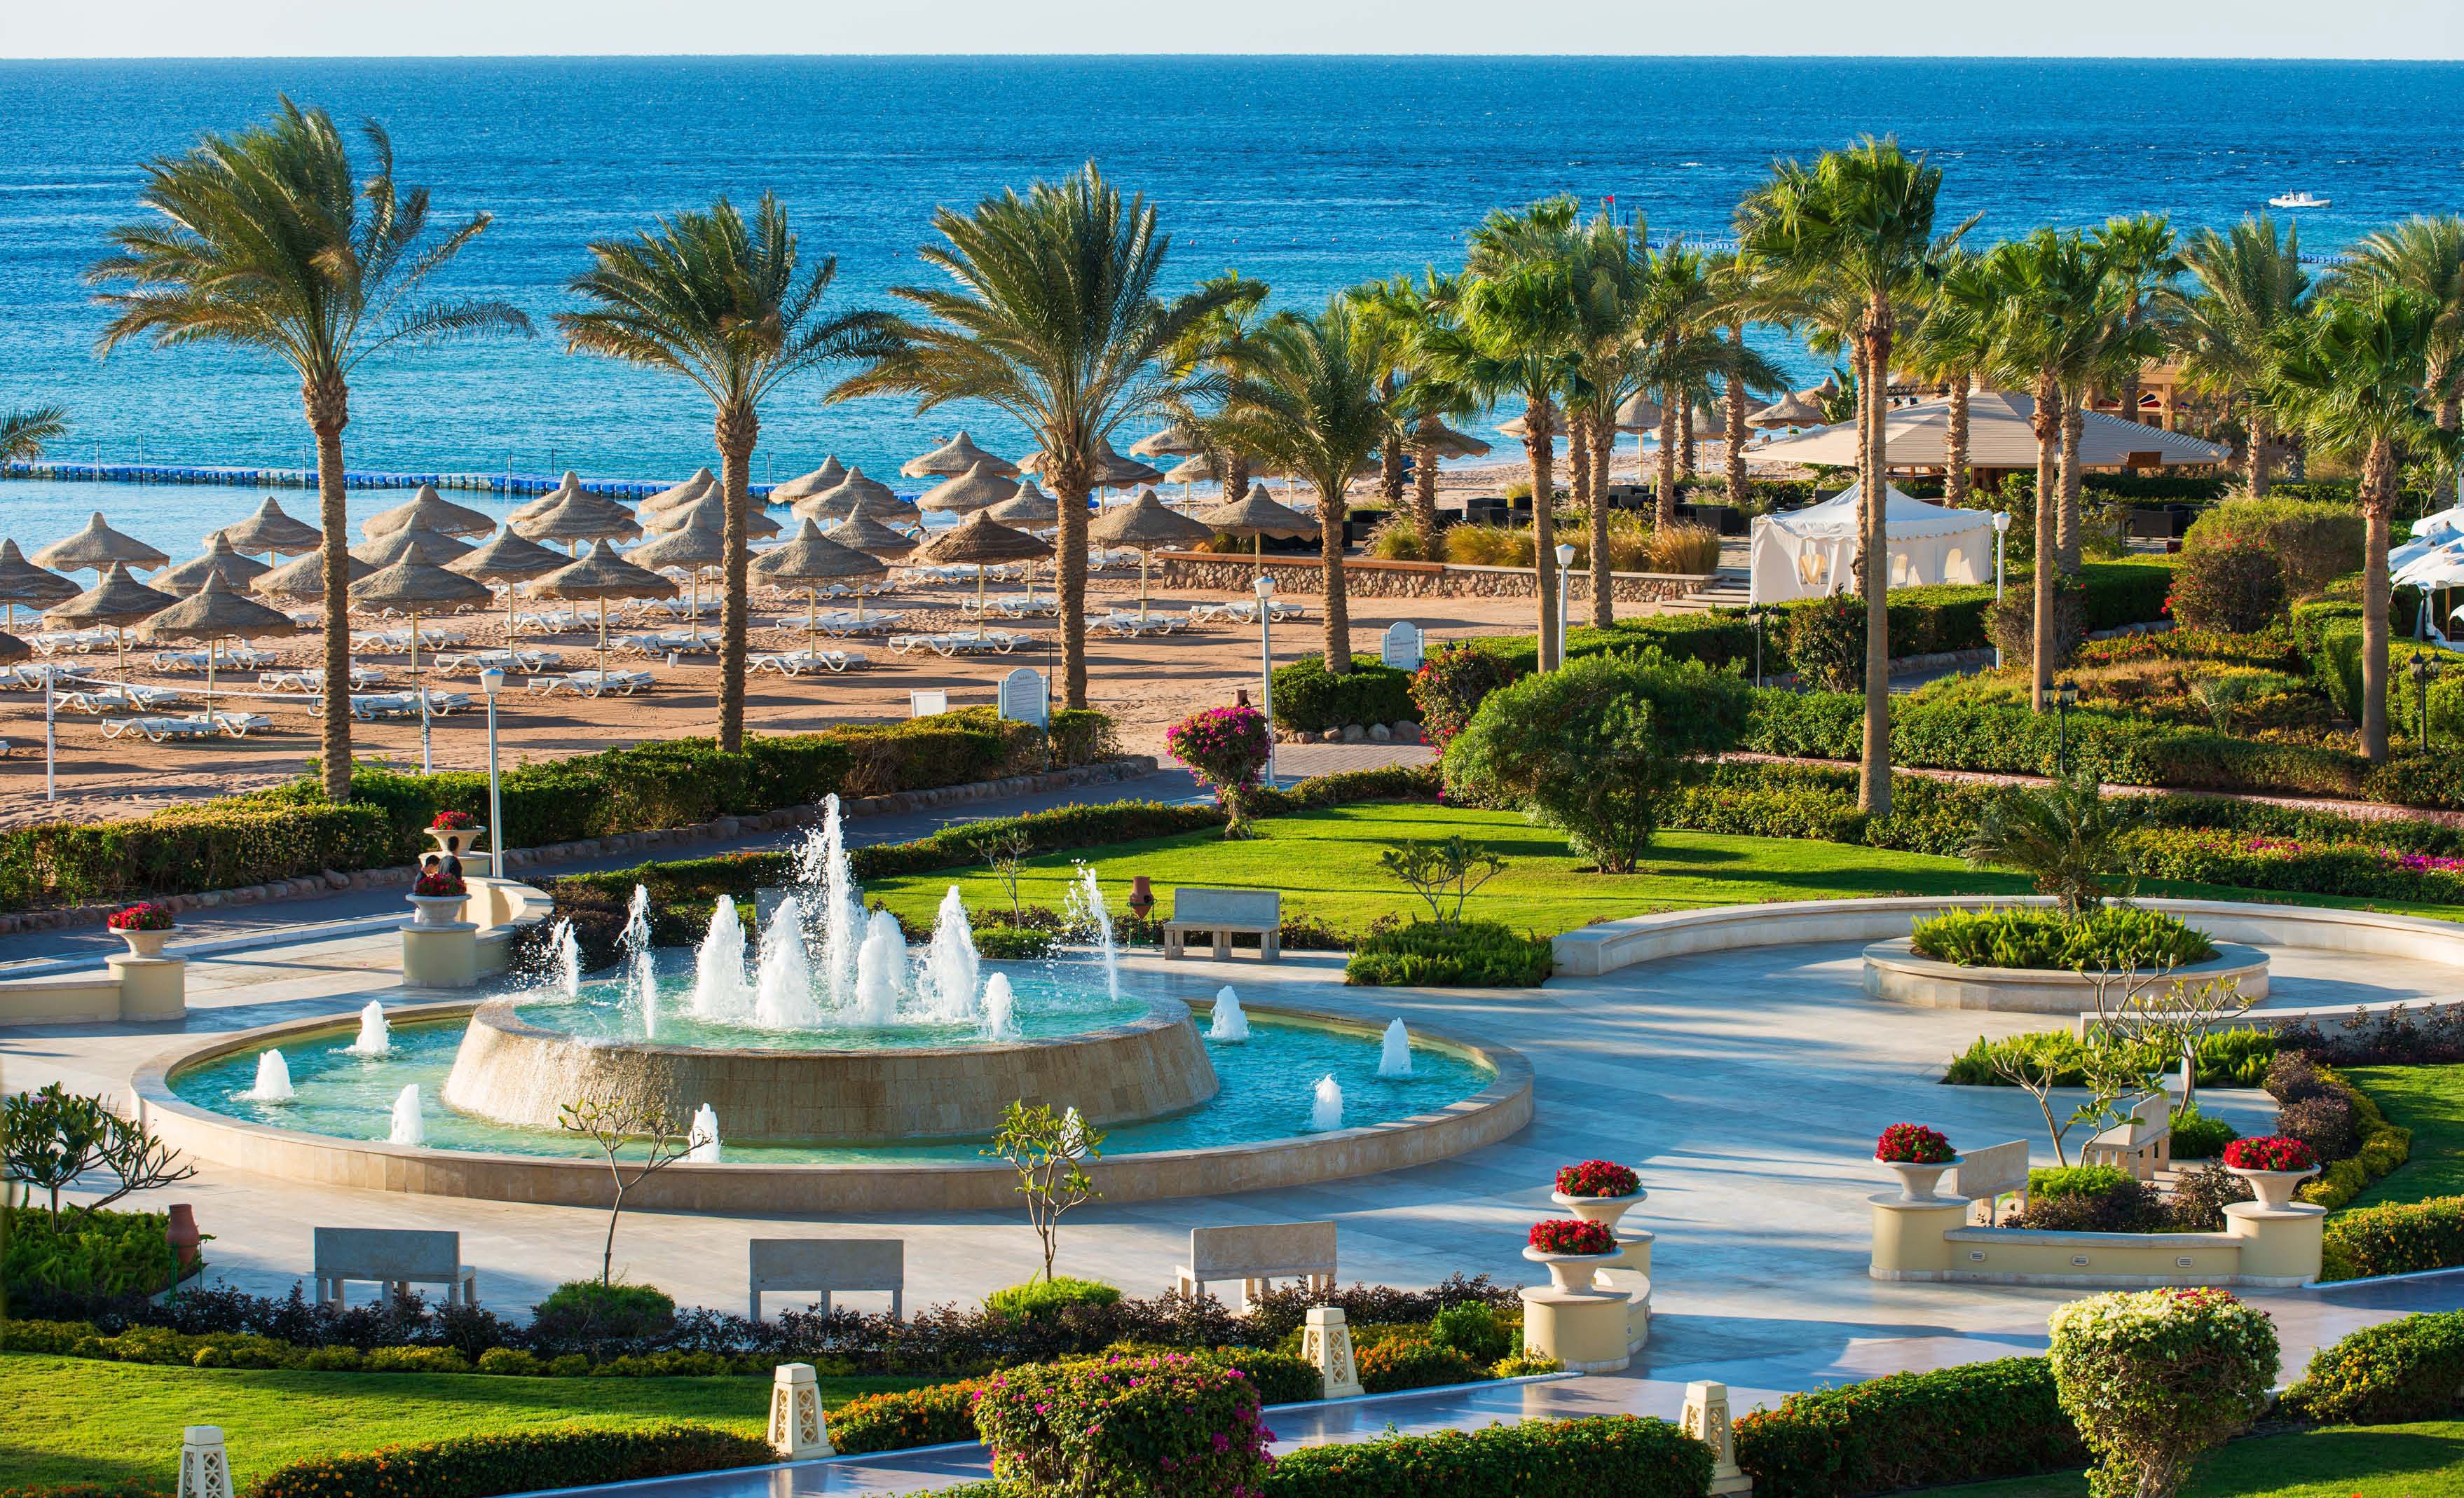 Egyiptom legjobb hotelek 2014 13. helyezett: Baron Resort 5* Sharm ...